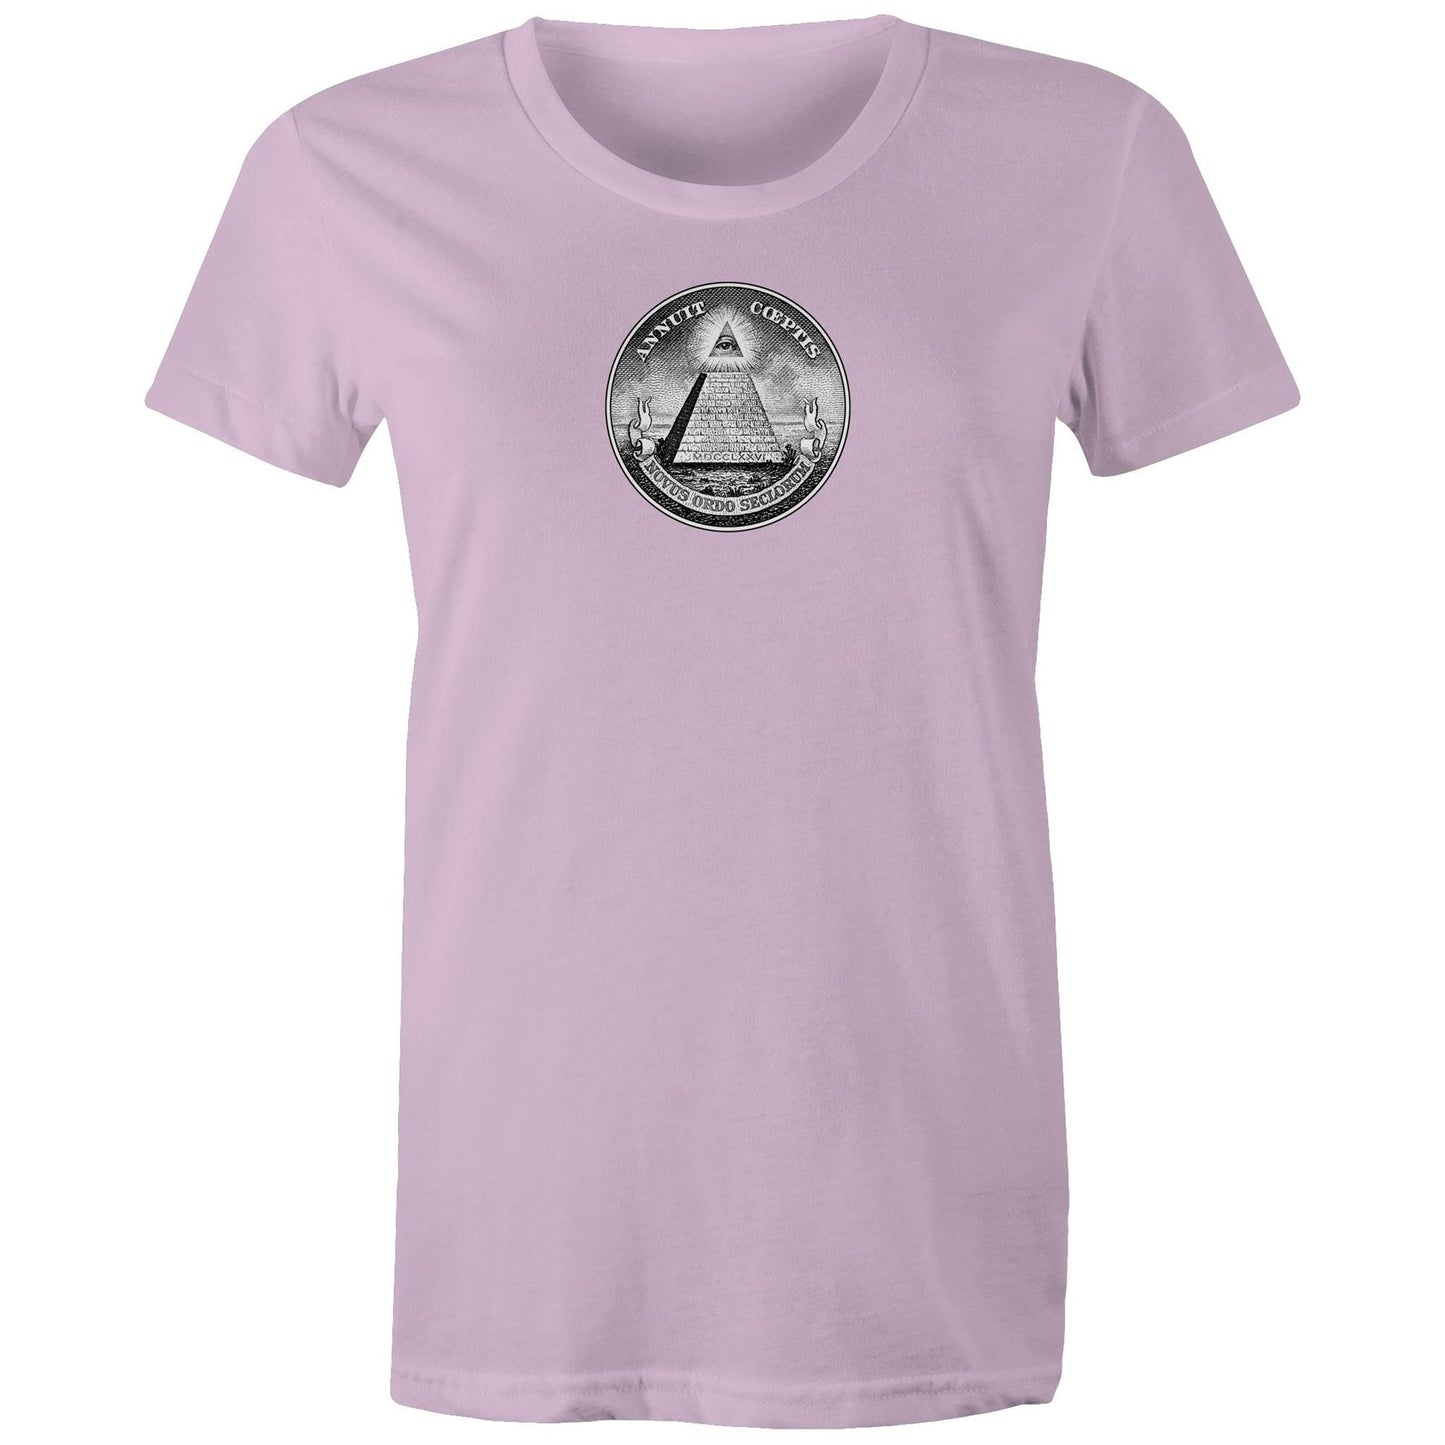 Illuminati T Shirts for Women